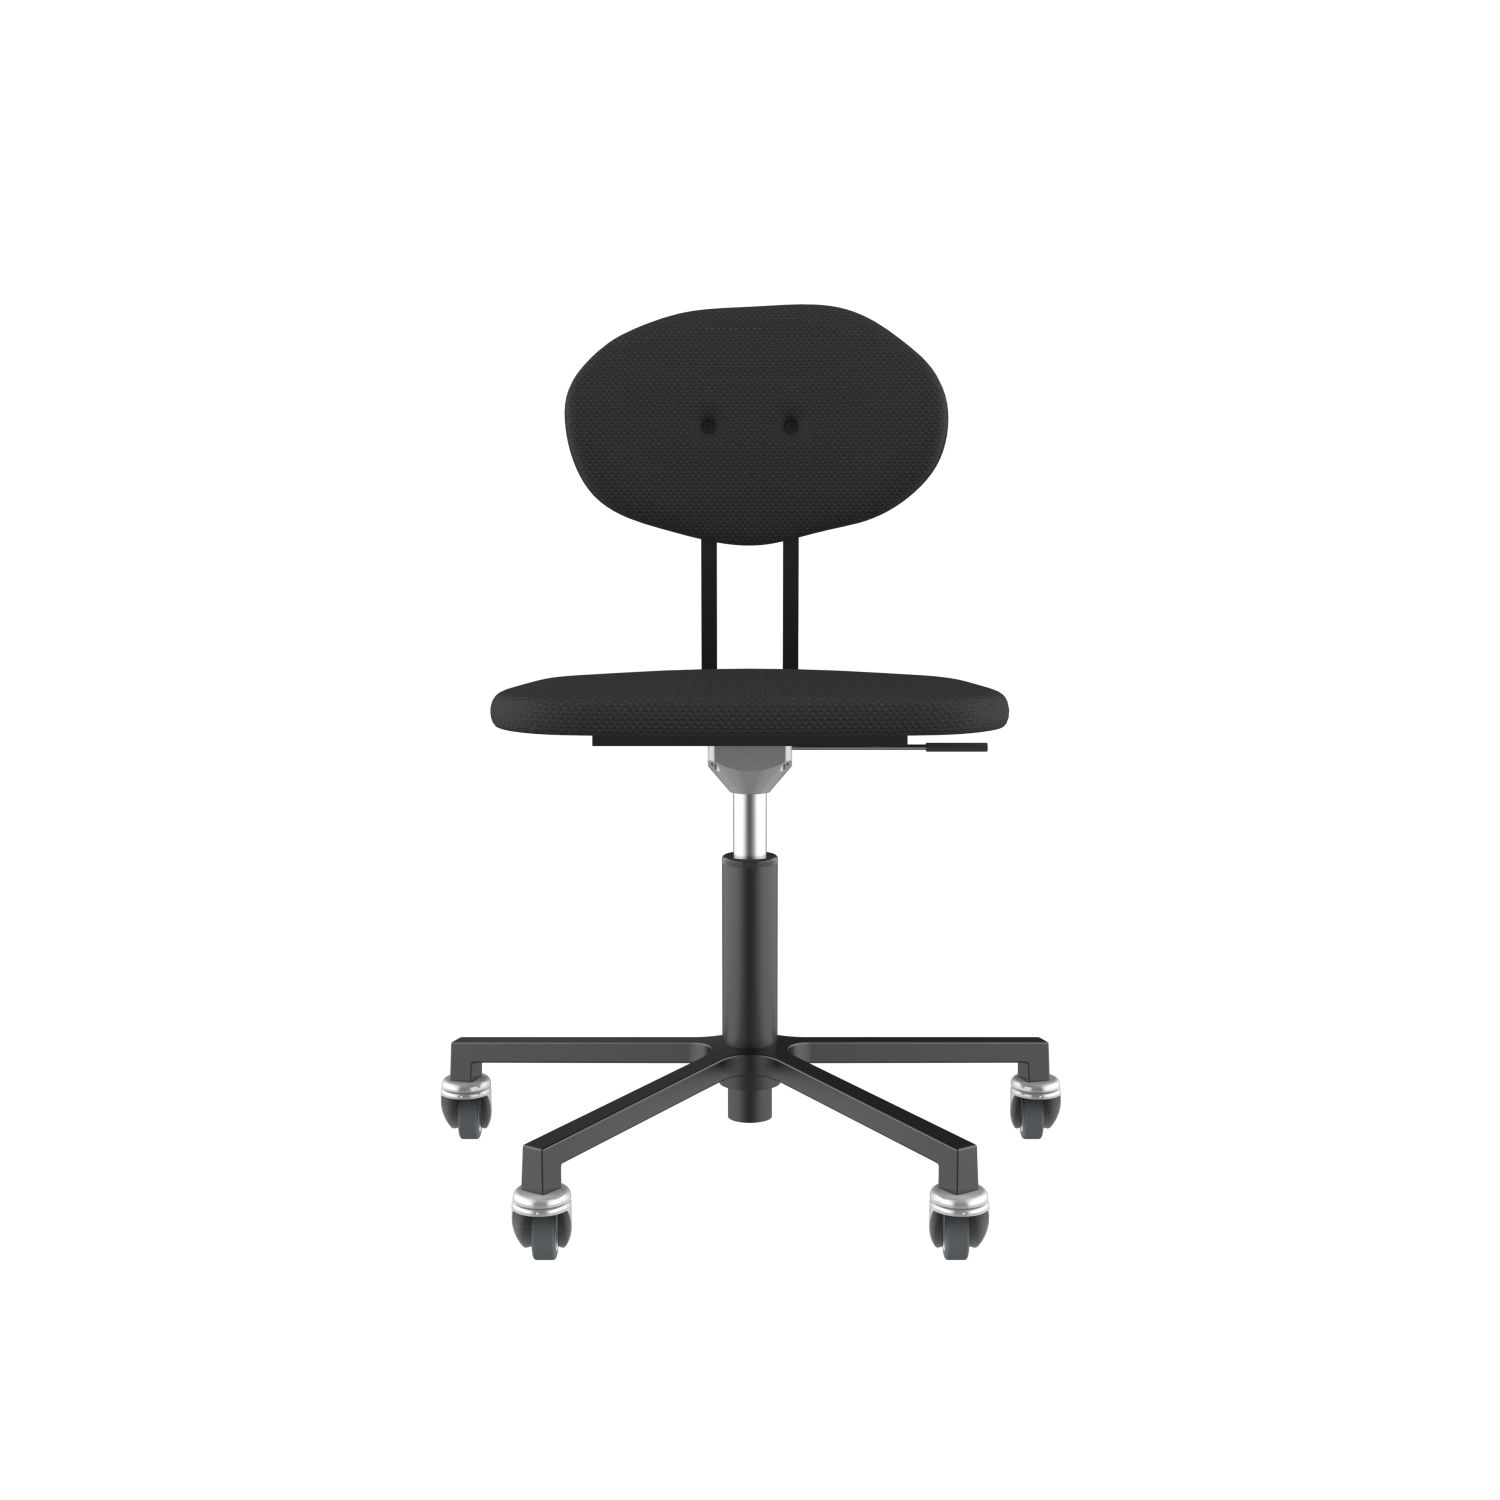 lensvelt maarten baas office chair without armrests backrest d havana black 090 black ral9005 soft wheels